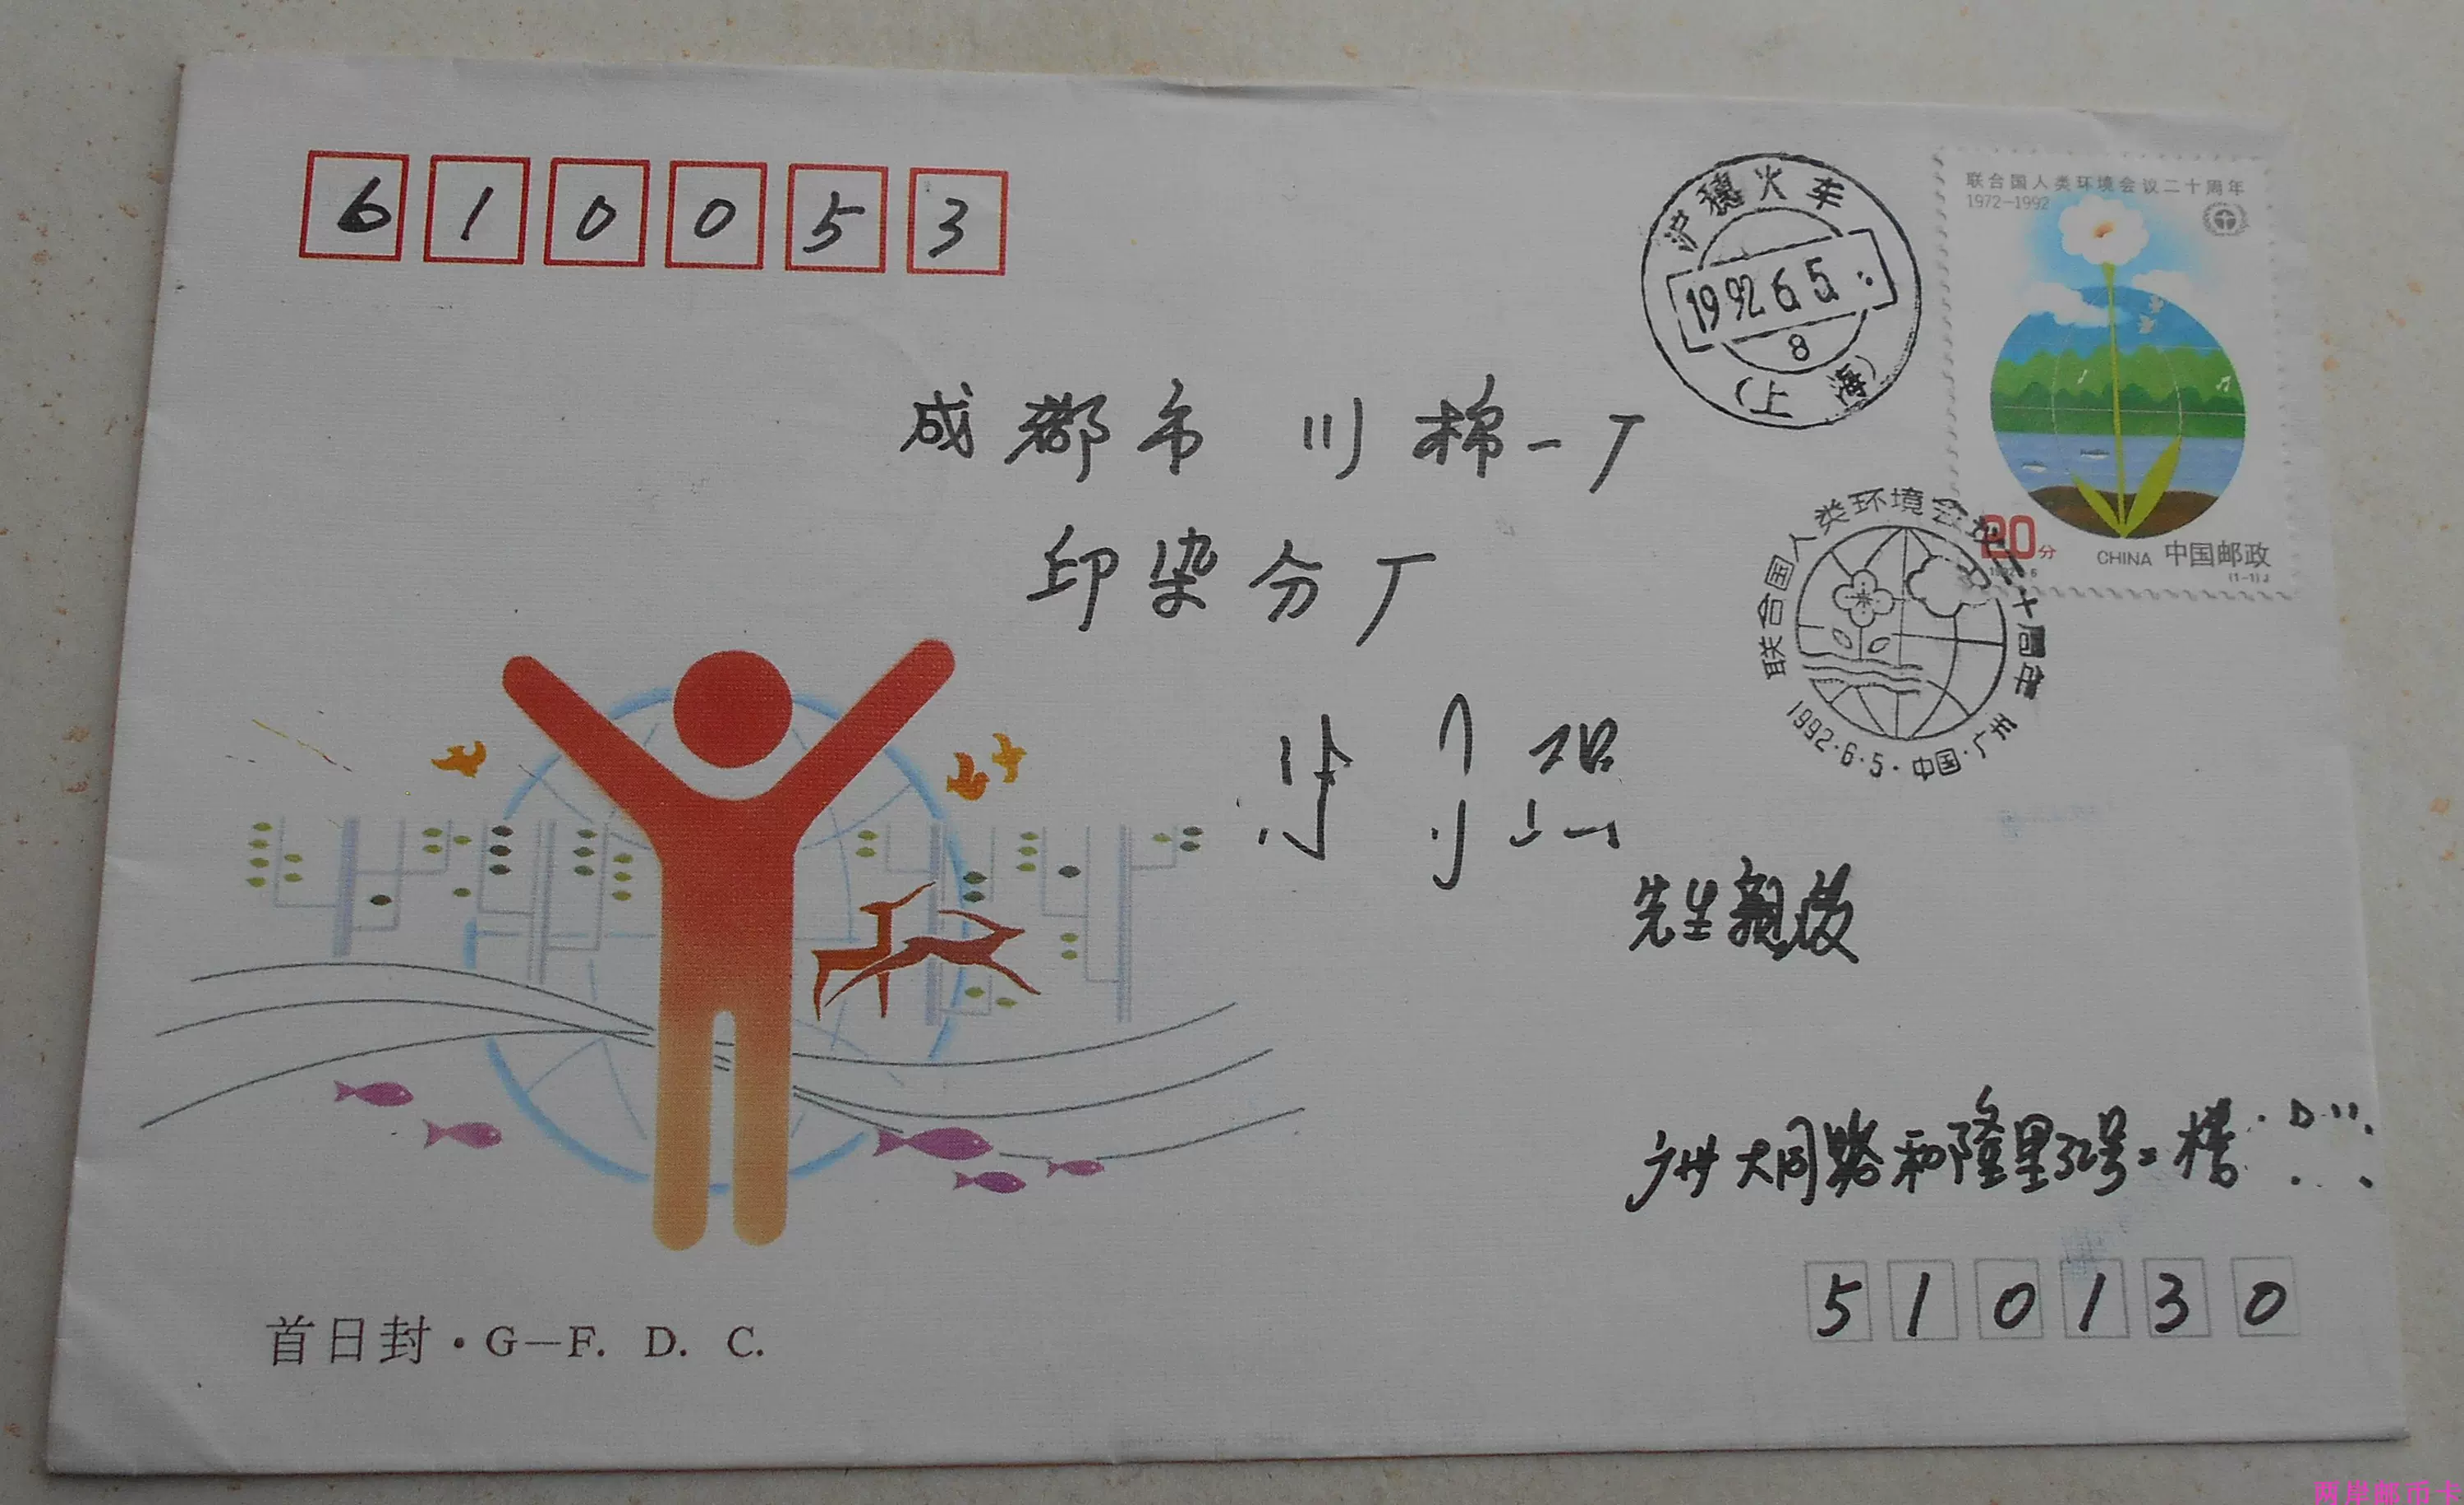 1992-6邮票广东邮司首日封沪穗火车戳92.6.5成都首日实寄封双戳清 